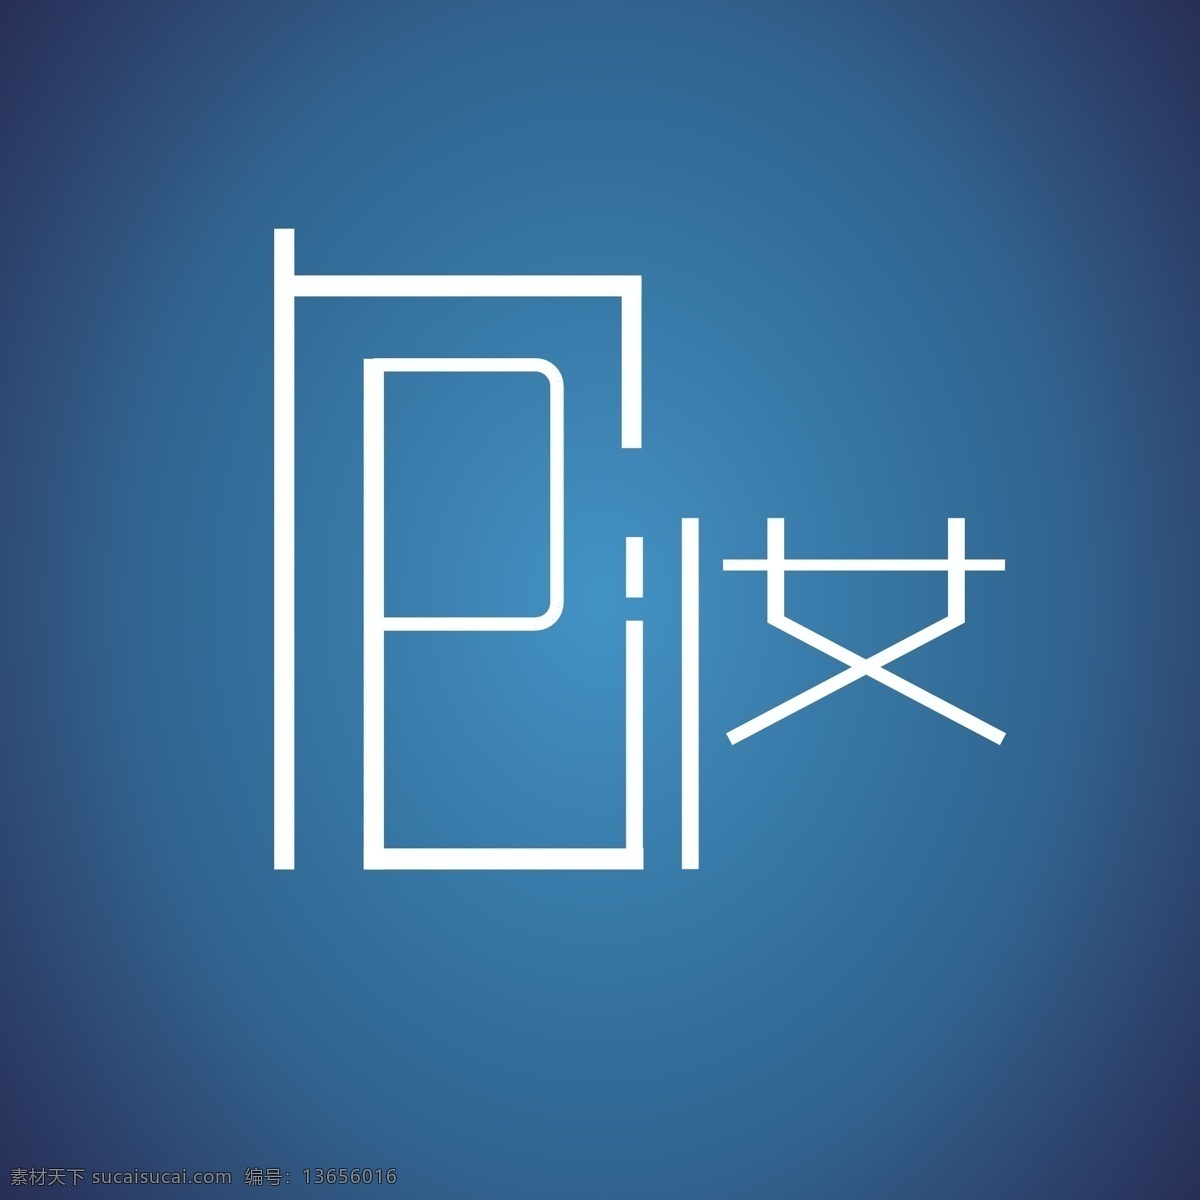 包 妆 店 logo 字体 蓝色 字体设计 包店logo 包妆